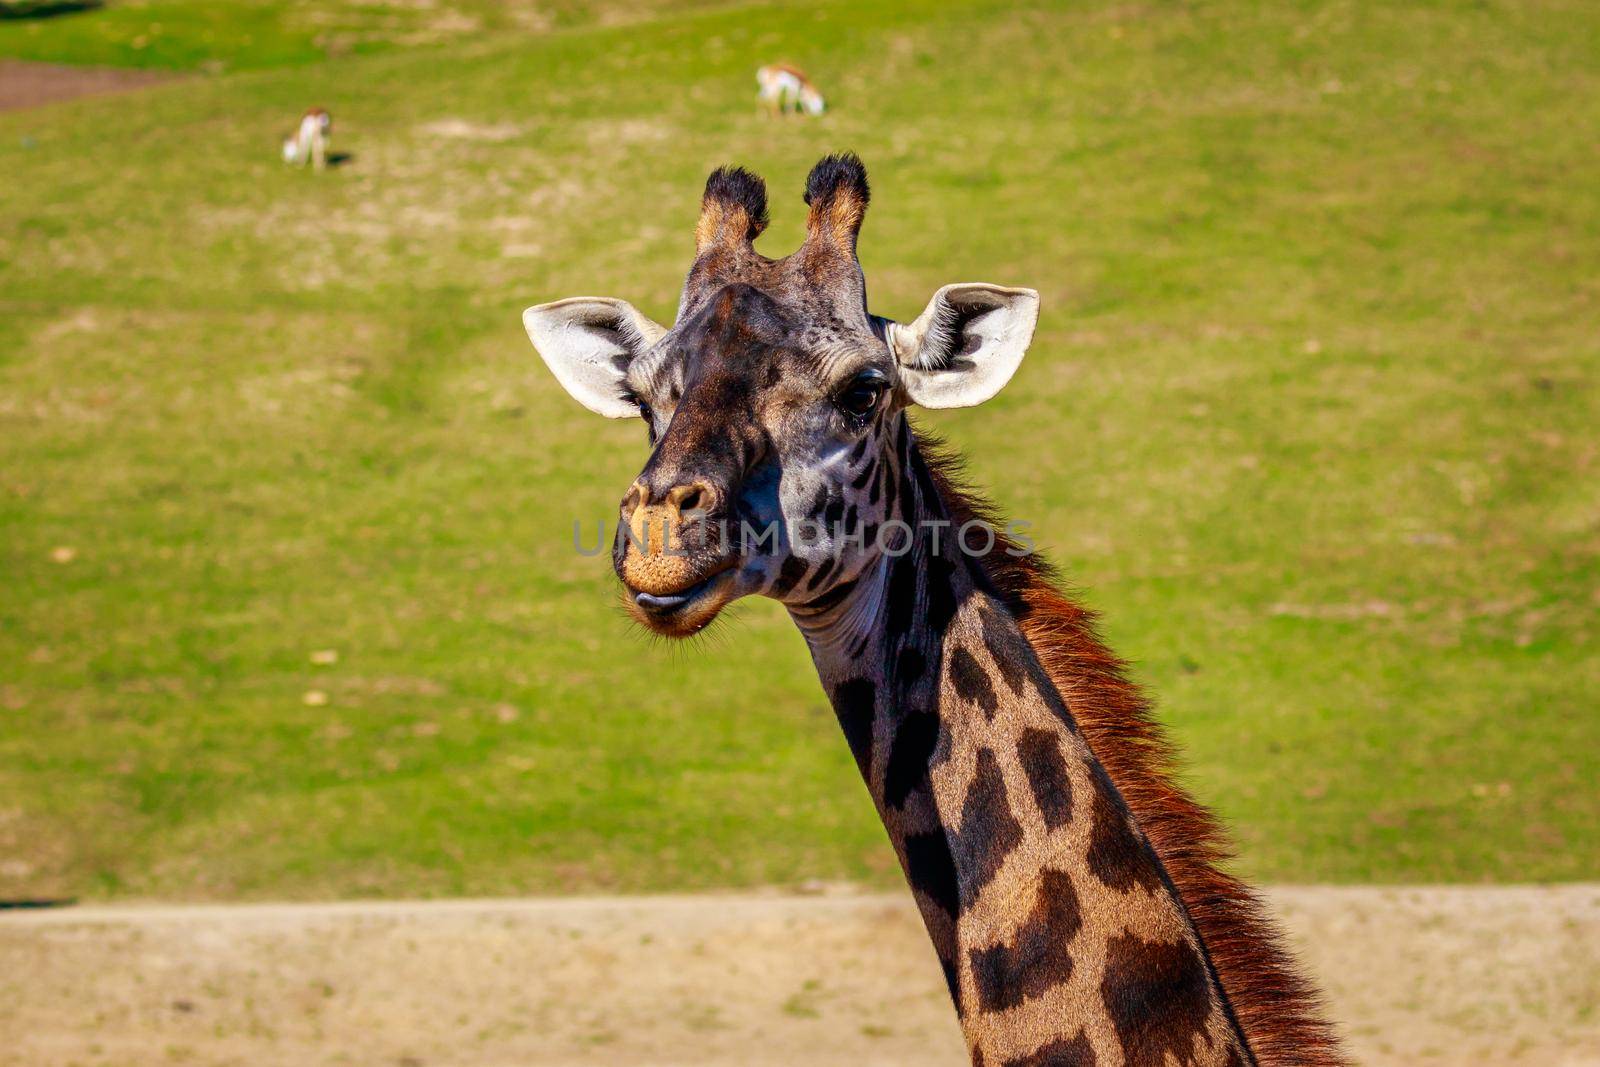 Giraffe head portrait by gepeng